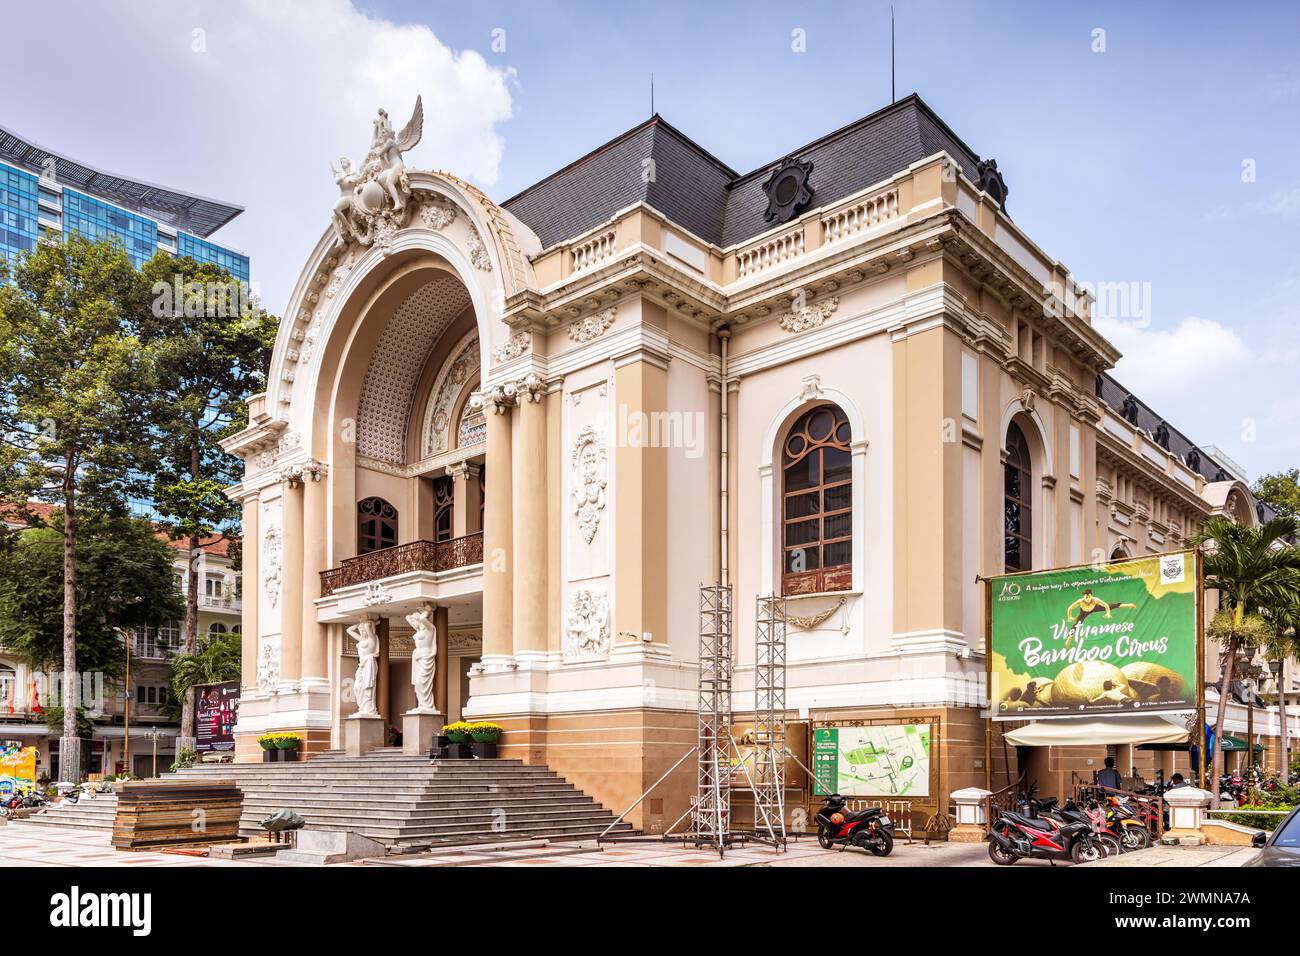 Das historische Saigon Opera House (das Stadttheater von Ho Chi Minh City) in der Dong Khoi Street, Ho Chi Minh City, Vietnam. Stockfoto